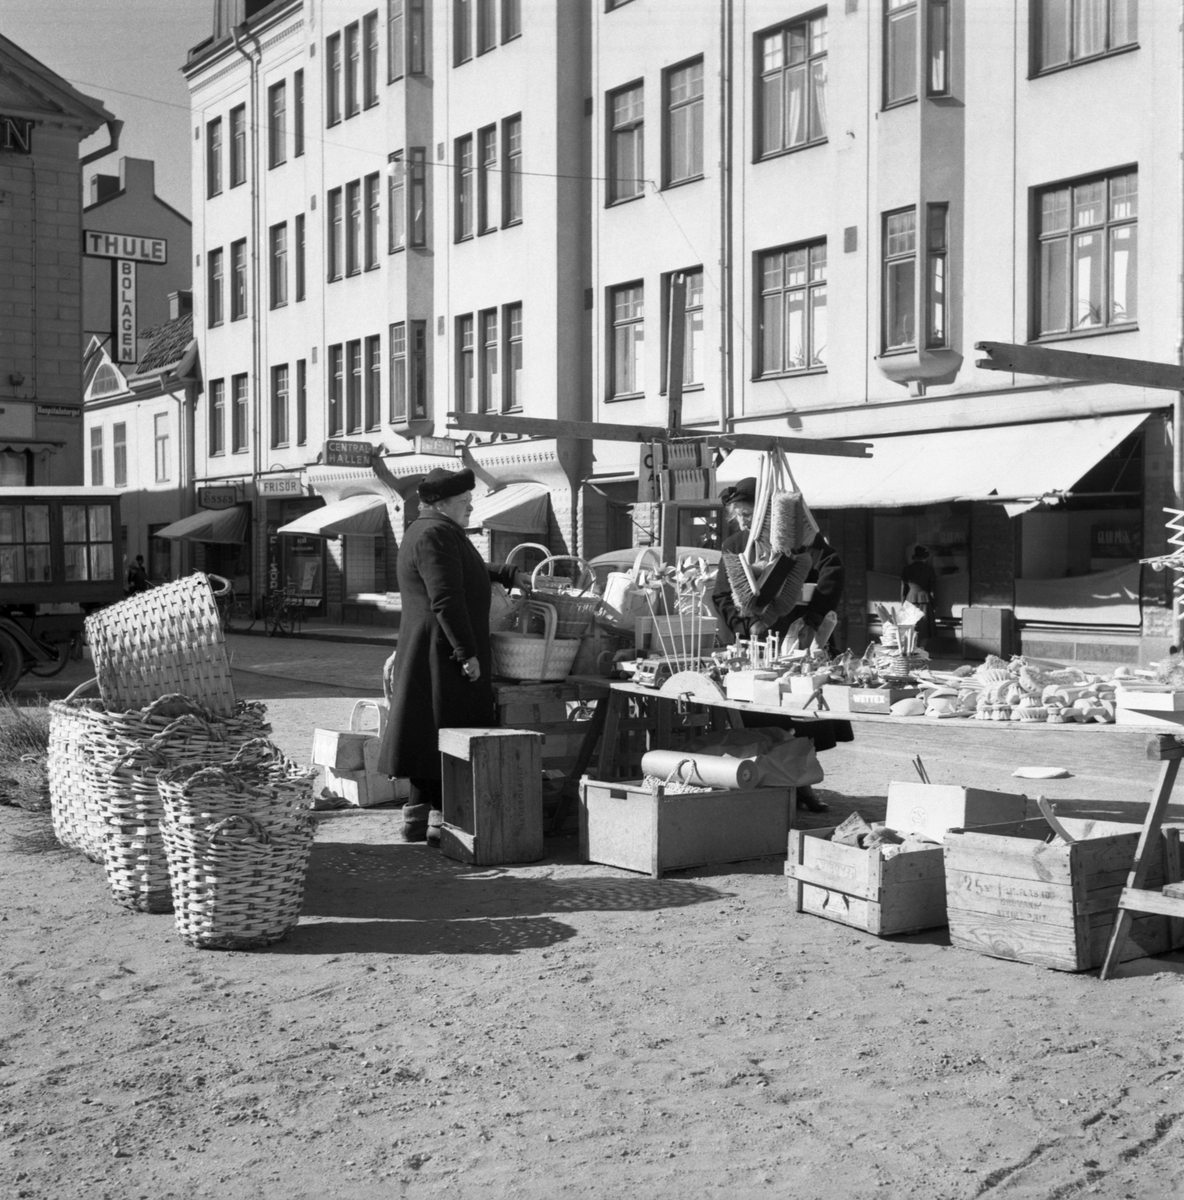 Fram till 1959 års ordningsstadga användes Hospitalstorget som marknadsplats. Handelns utbud kom att förändras över tid, där tillkomsten av stadens saluhallar markerade en ny tid med ökade krav på livsmedelshygien. Nyttovaror av trä gick dock bra att försälja. Fototid omkring 1950.